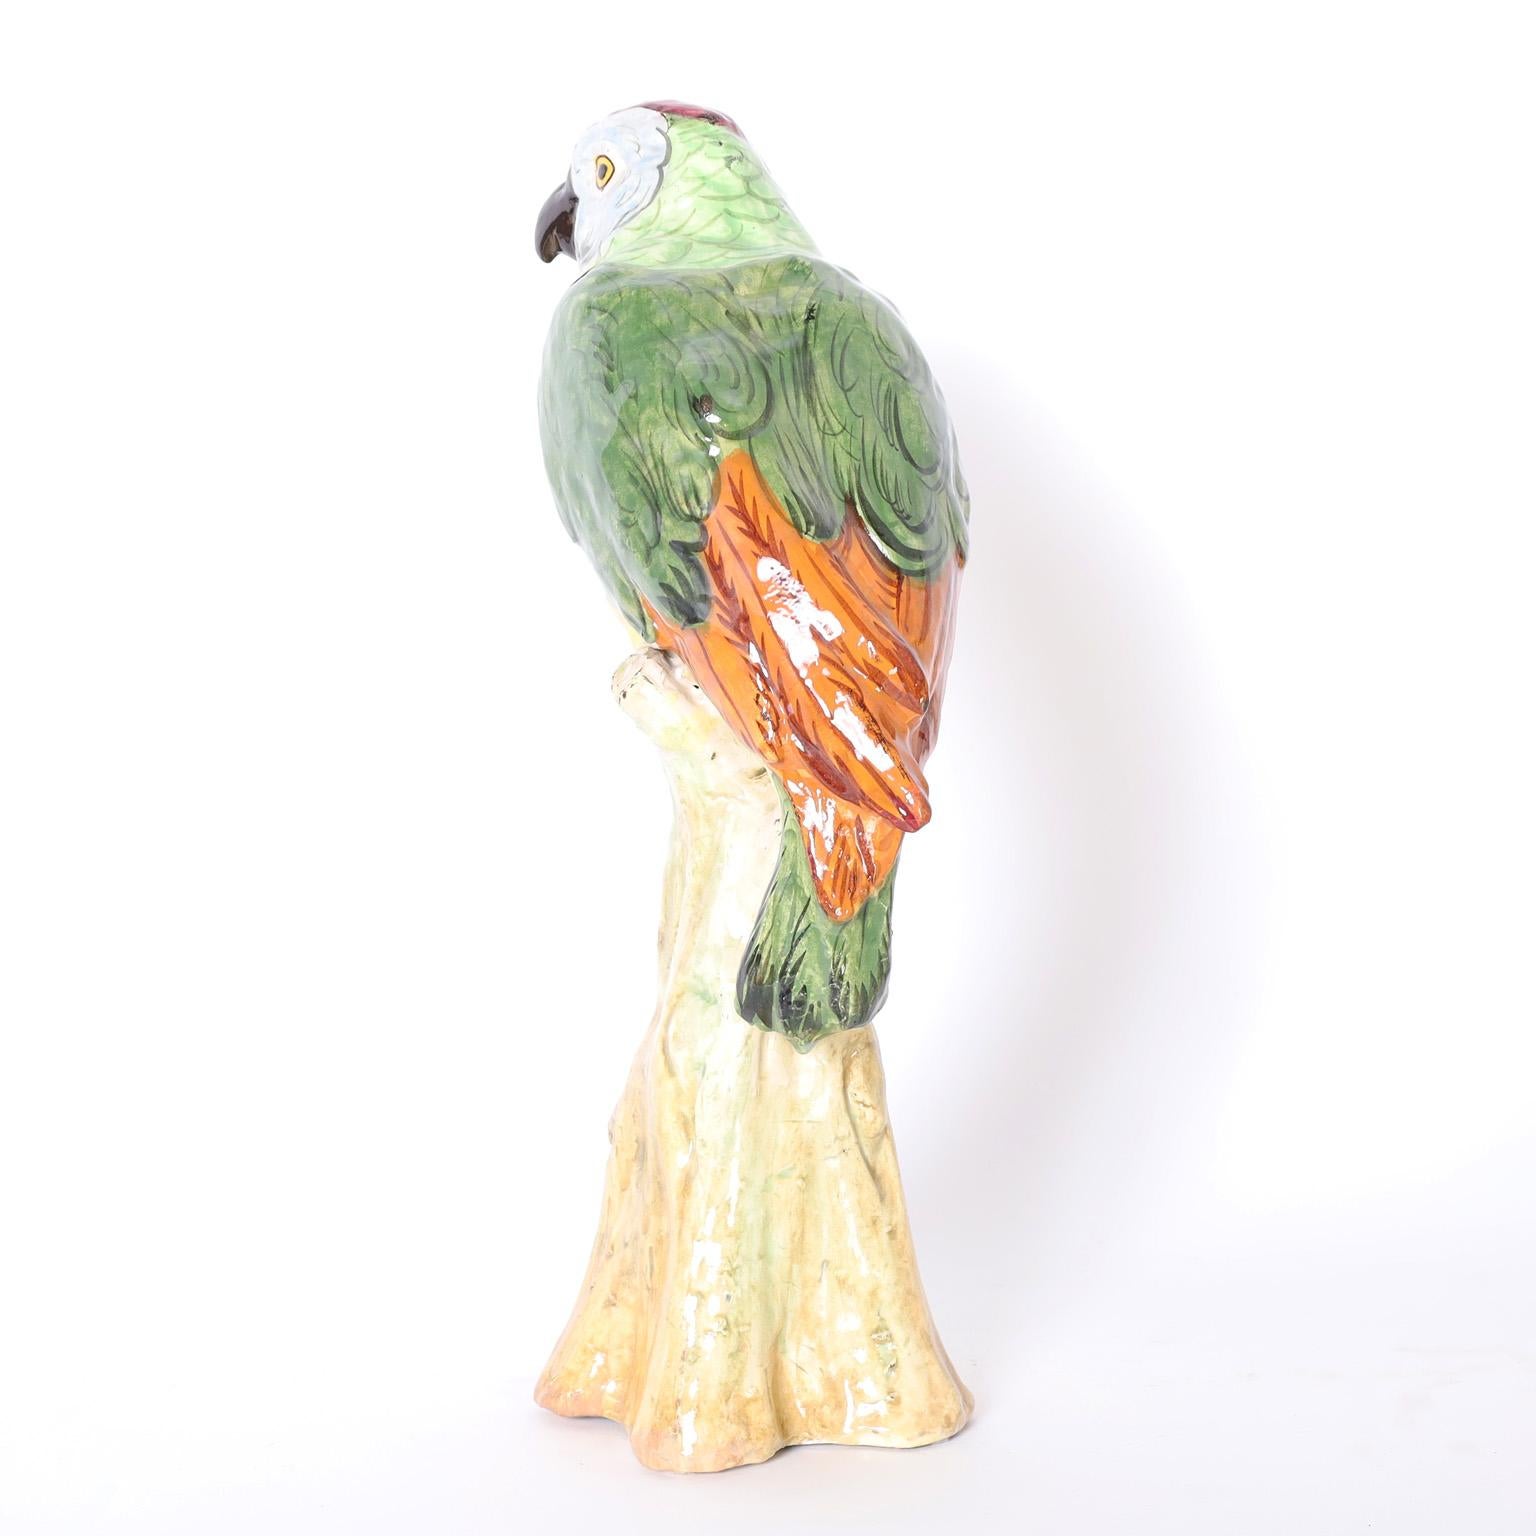 Paire de perroquets en terre cuite, décorés de couleurs tropicales et émaillés, perchés sur de faux troncs d'arbre.